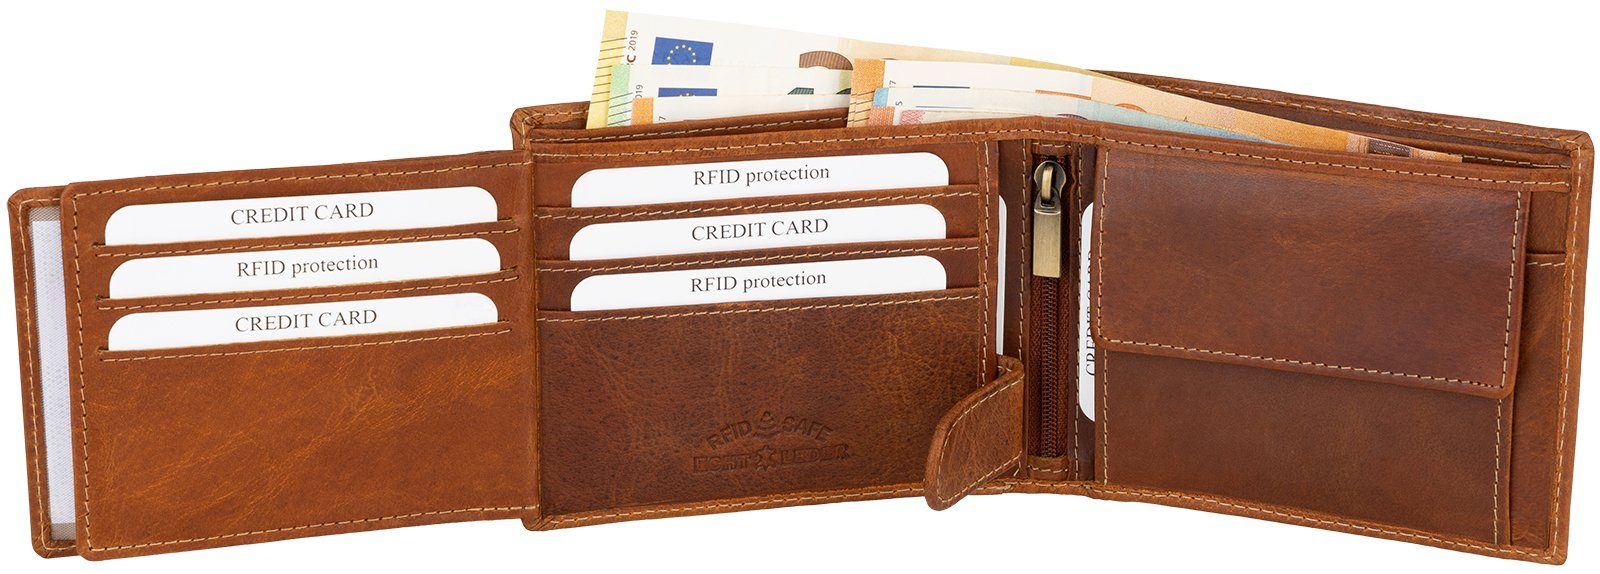 echt RFID Geldbörse Jennifer Querformat, Geldbörse Portemonnaie Geldbeutel Schutz Herren Leder Jones RFID